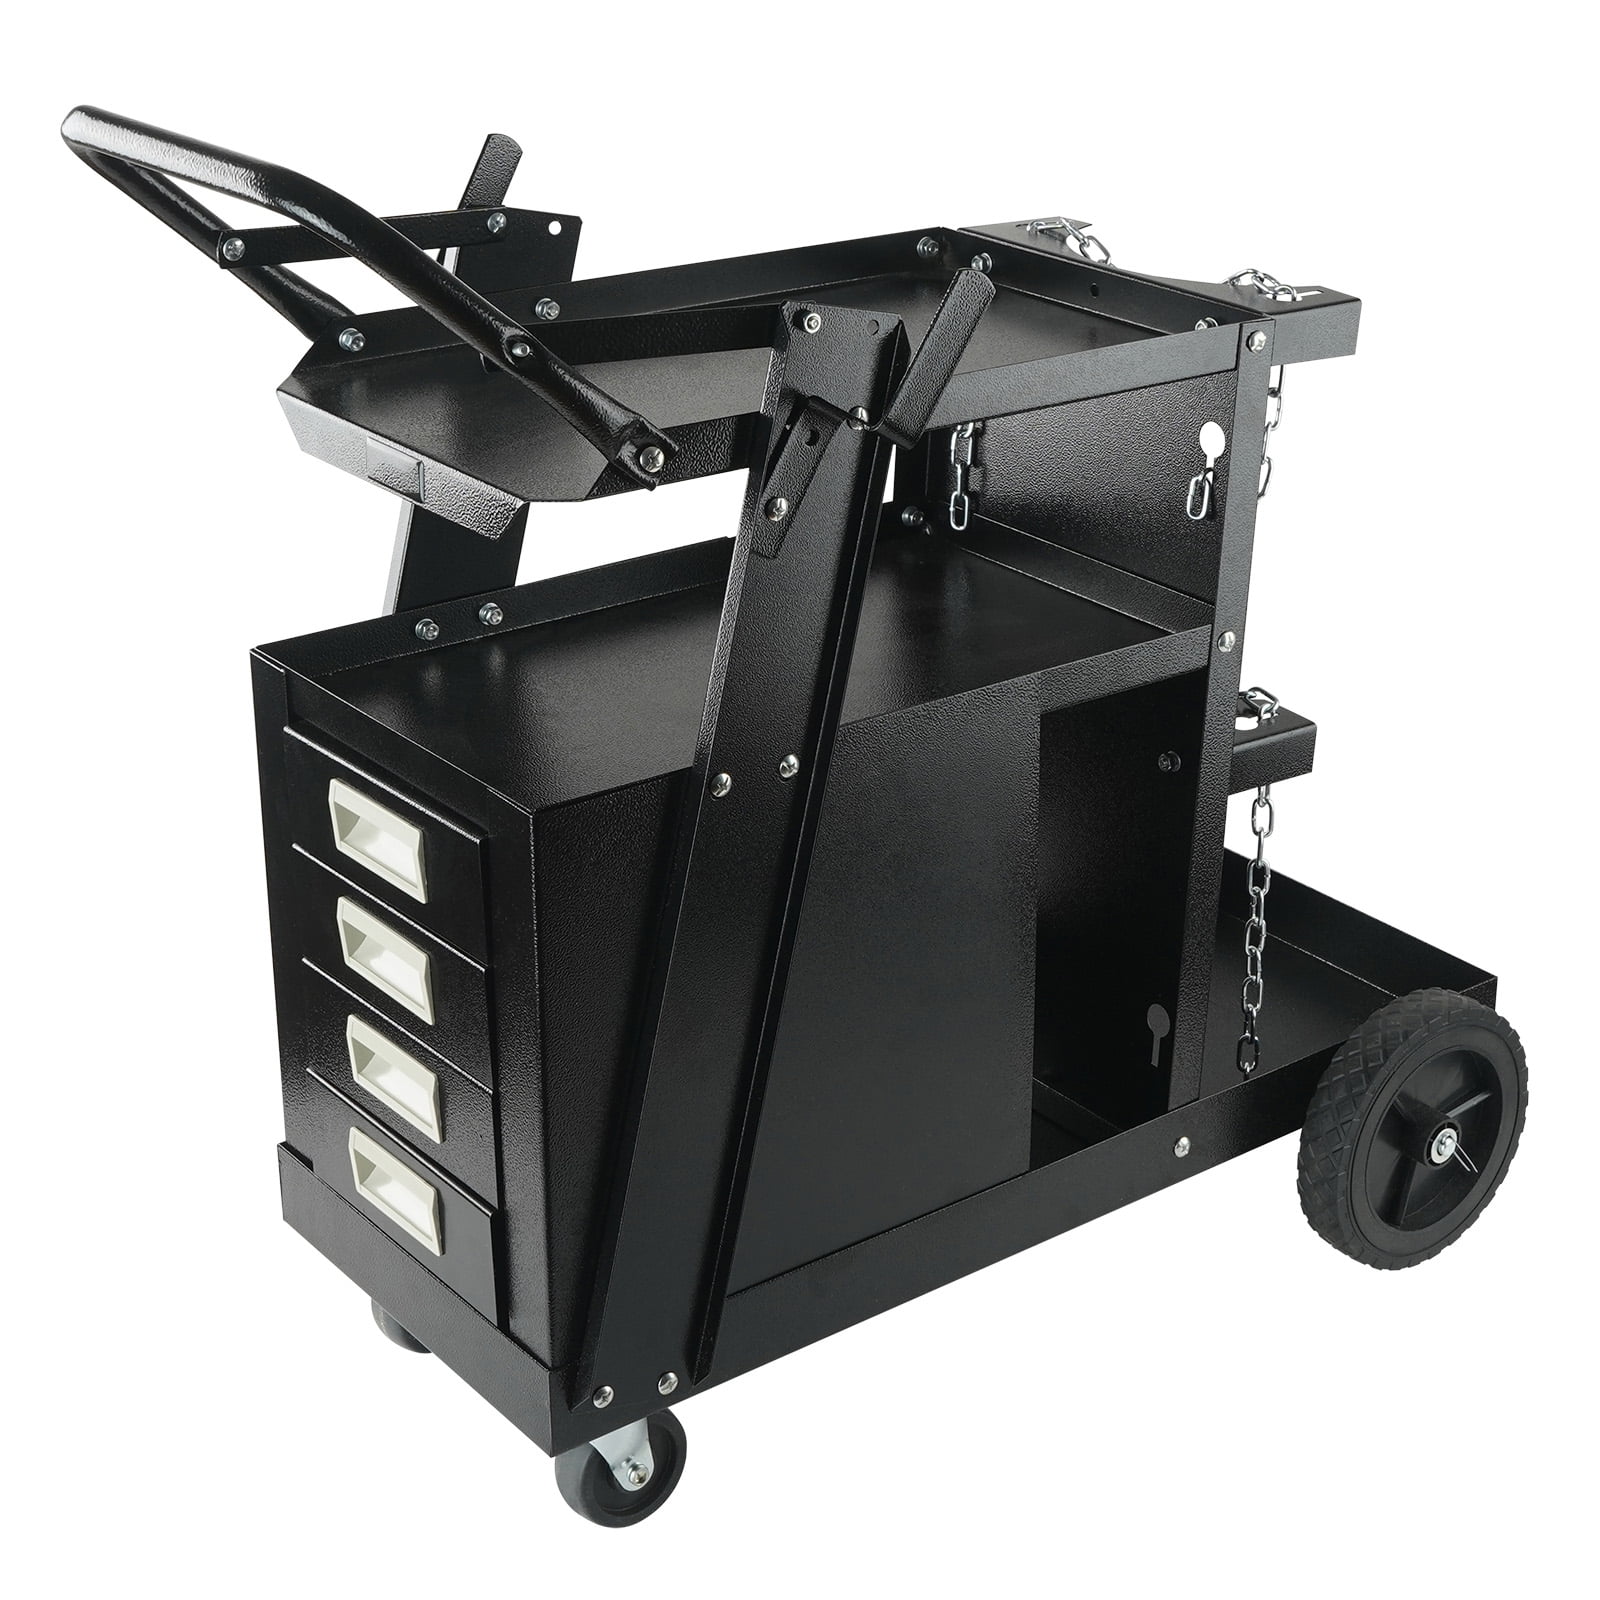 BENTISM Welding Cart, 2-Tier 4 Drawers Welder Cart with 265 LBS Weight ...